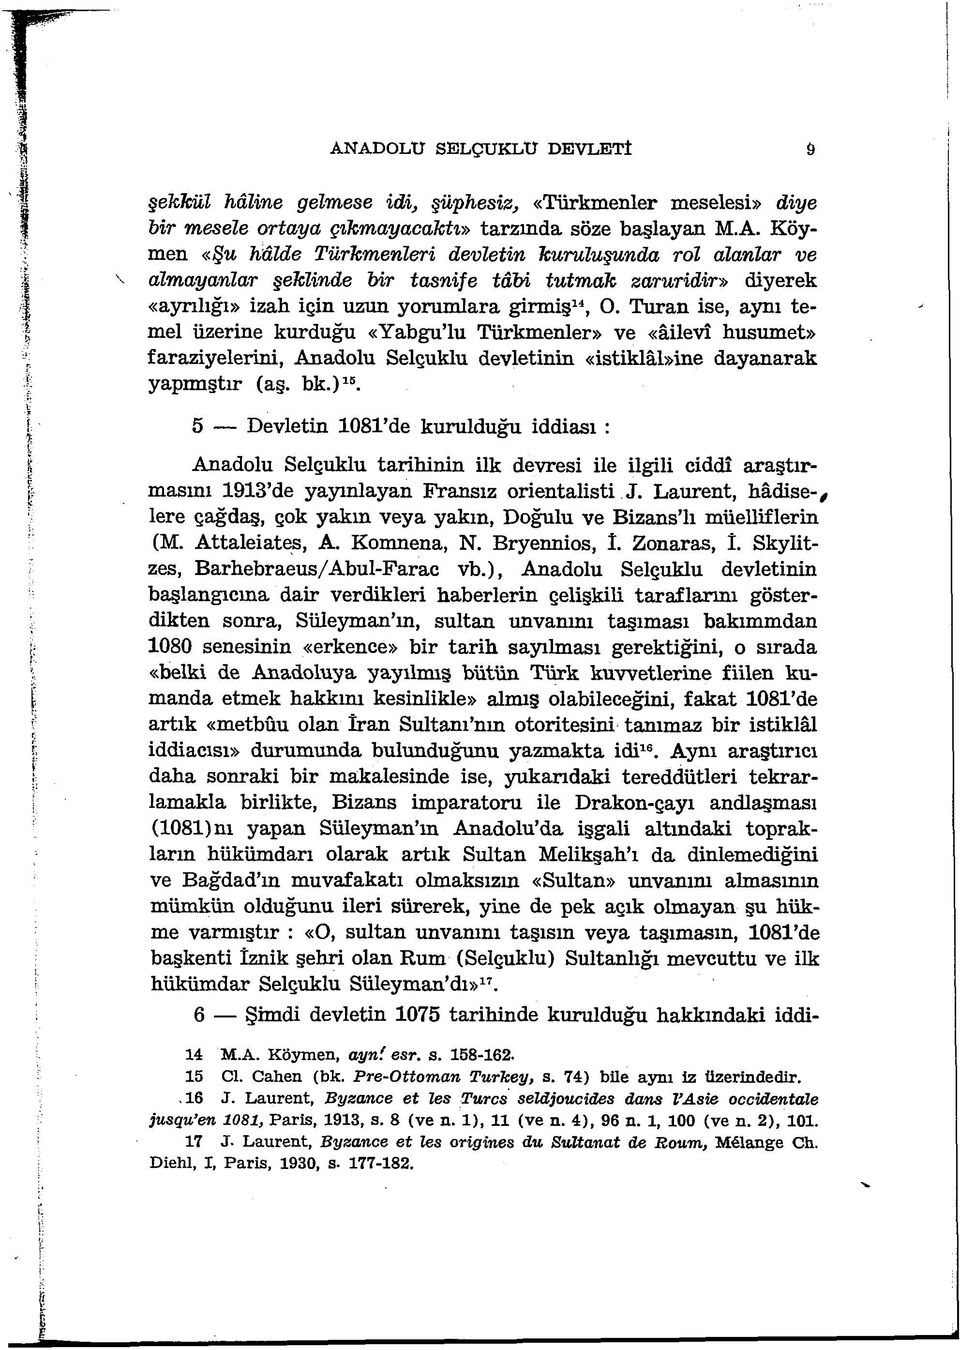 5 Devletin 1081 de kurulduğu iddiası : Anadolu Selçuklu tarihinin ilk devresi ile ilgili ciddî araştırmasını 1913 de yayınlayan Fransız orientalisti J.